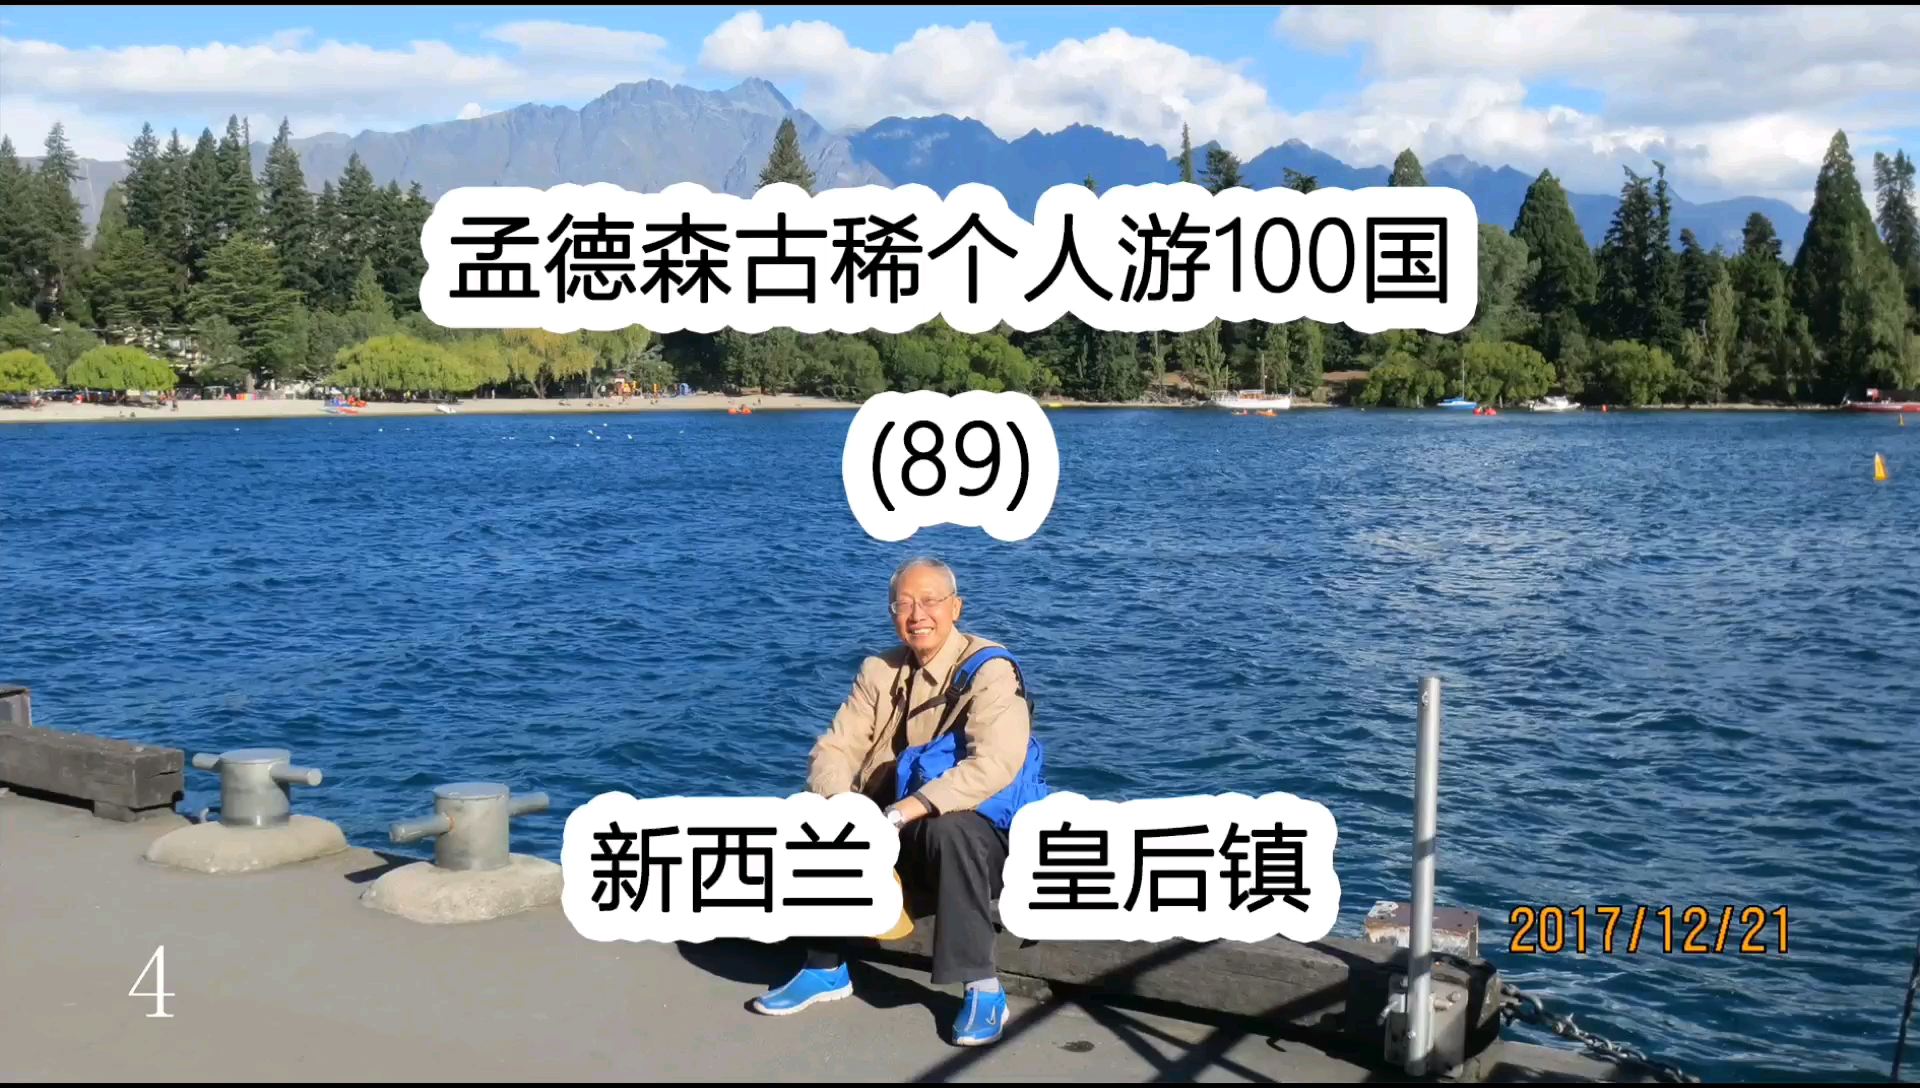 孟德森古稀个人游100国(89)新西兰 皇后镇